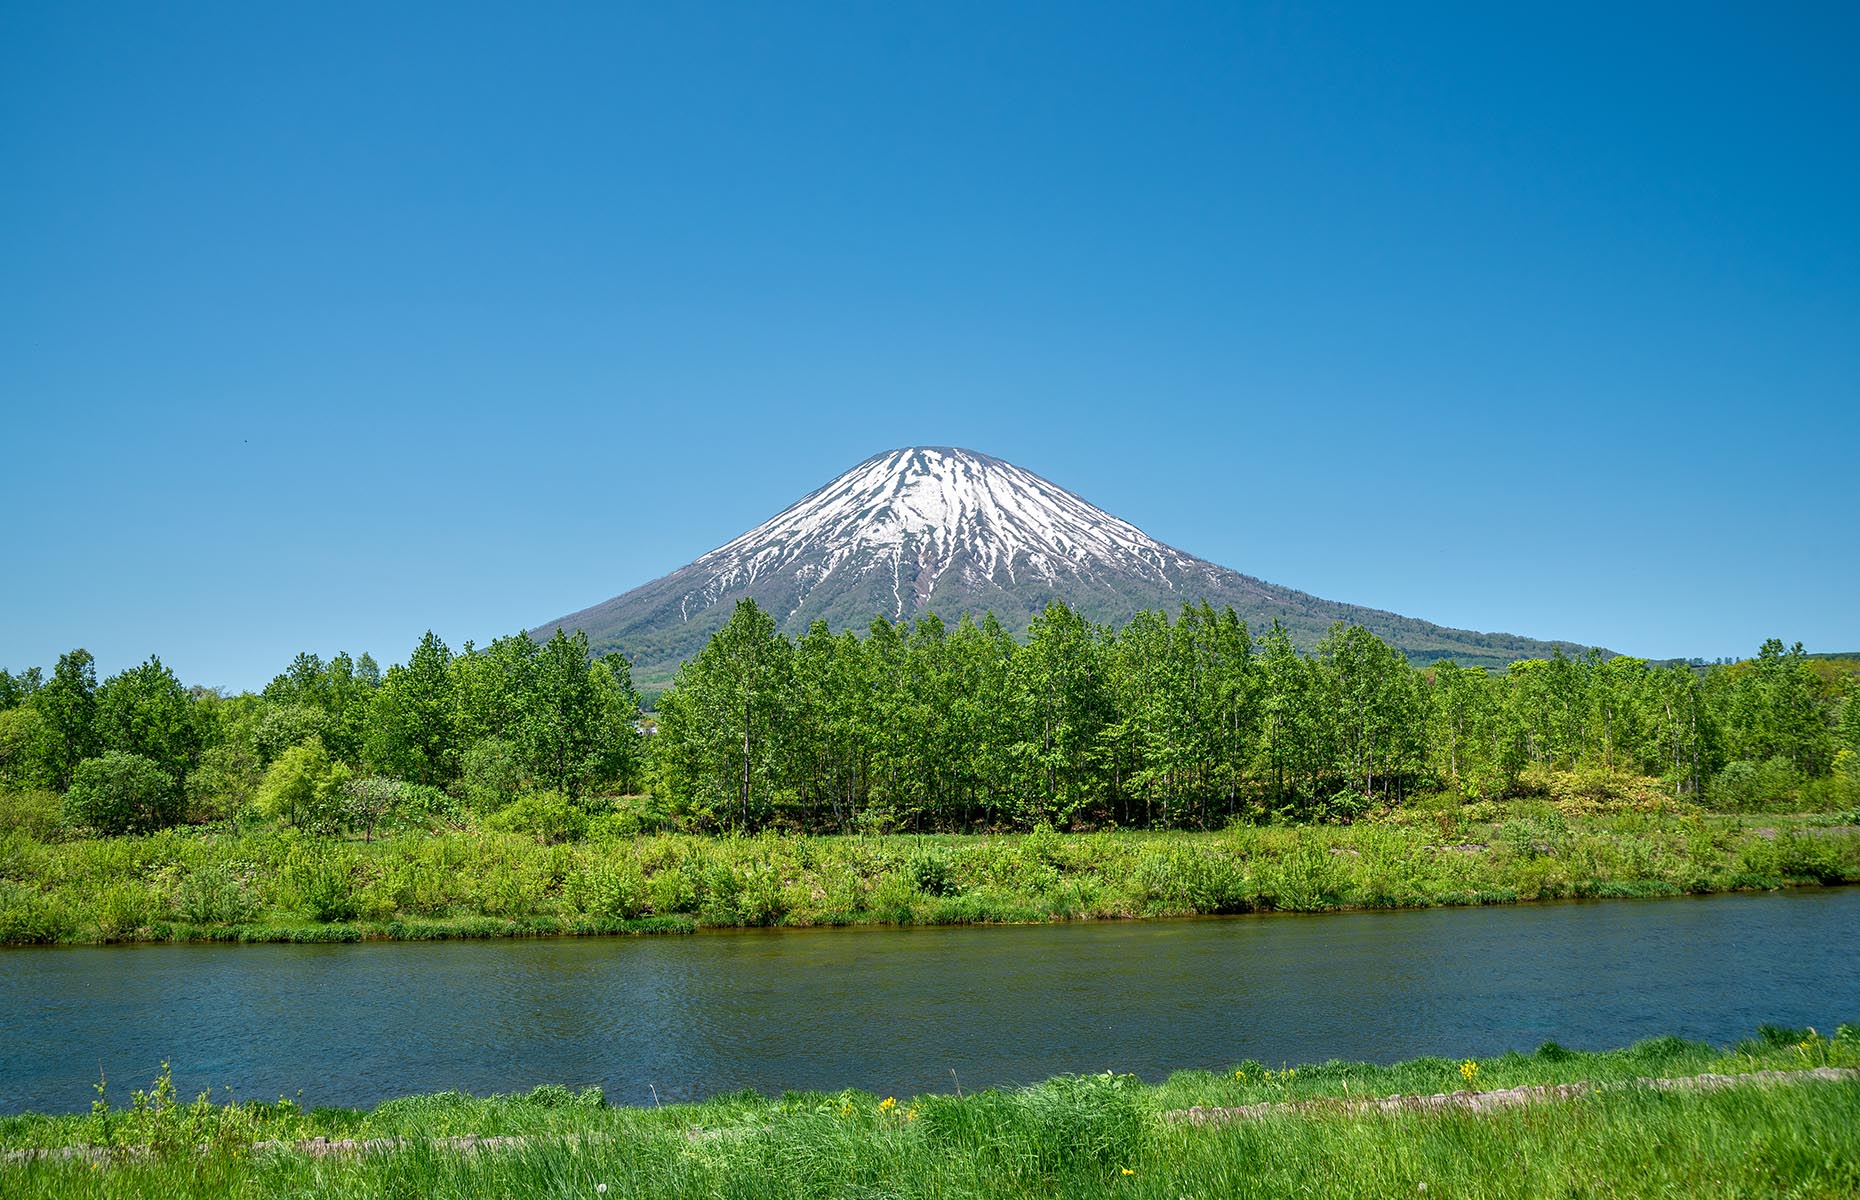 Mount Yotei (Image: tkyszk/Shutterstock)